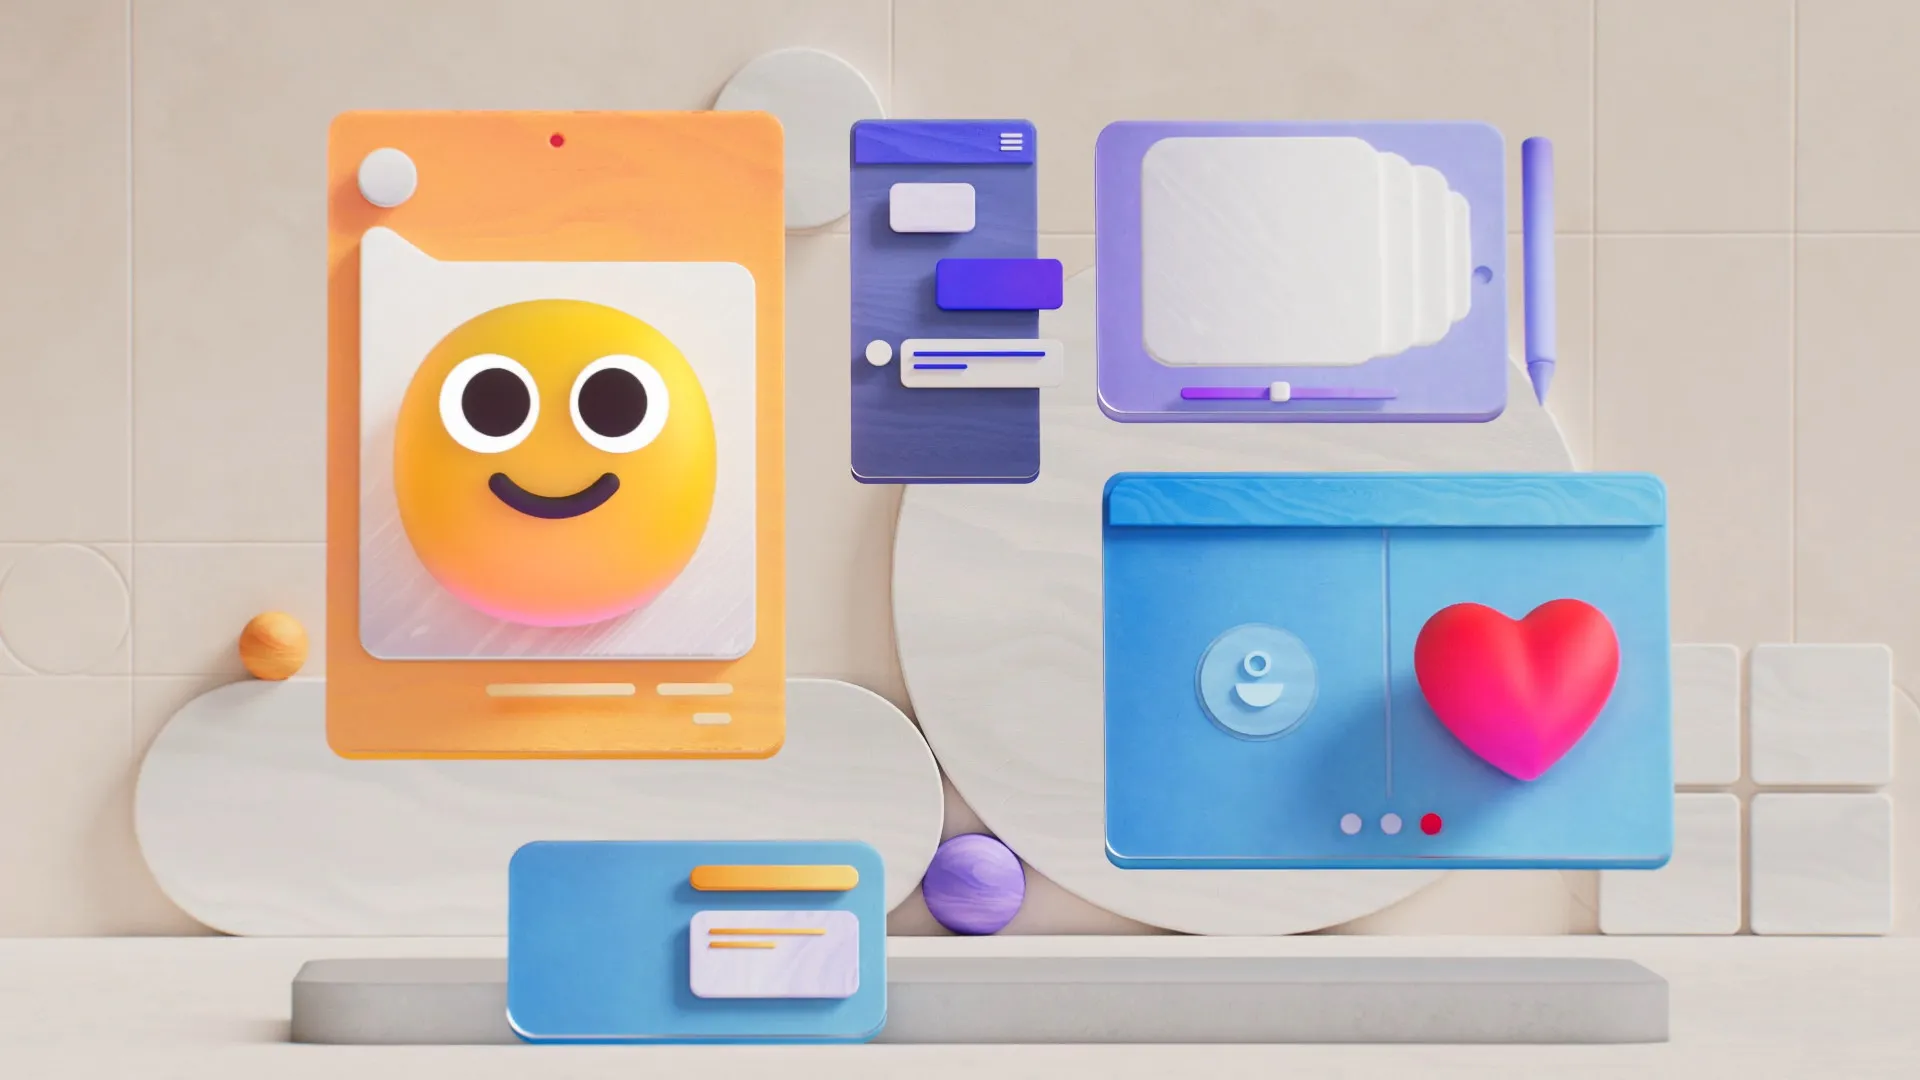 Design 3D Emoji da Microsoft mostrando rostos sorridentes e outras ilustrações